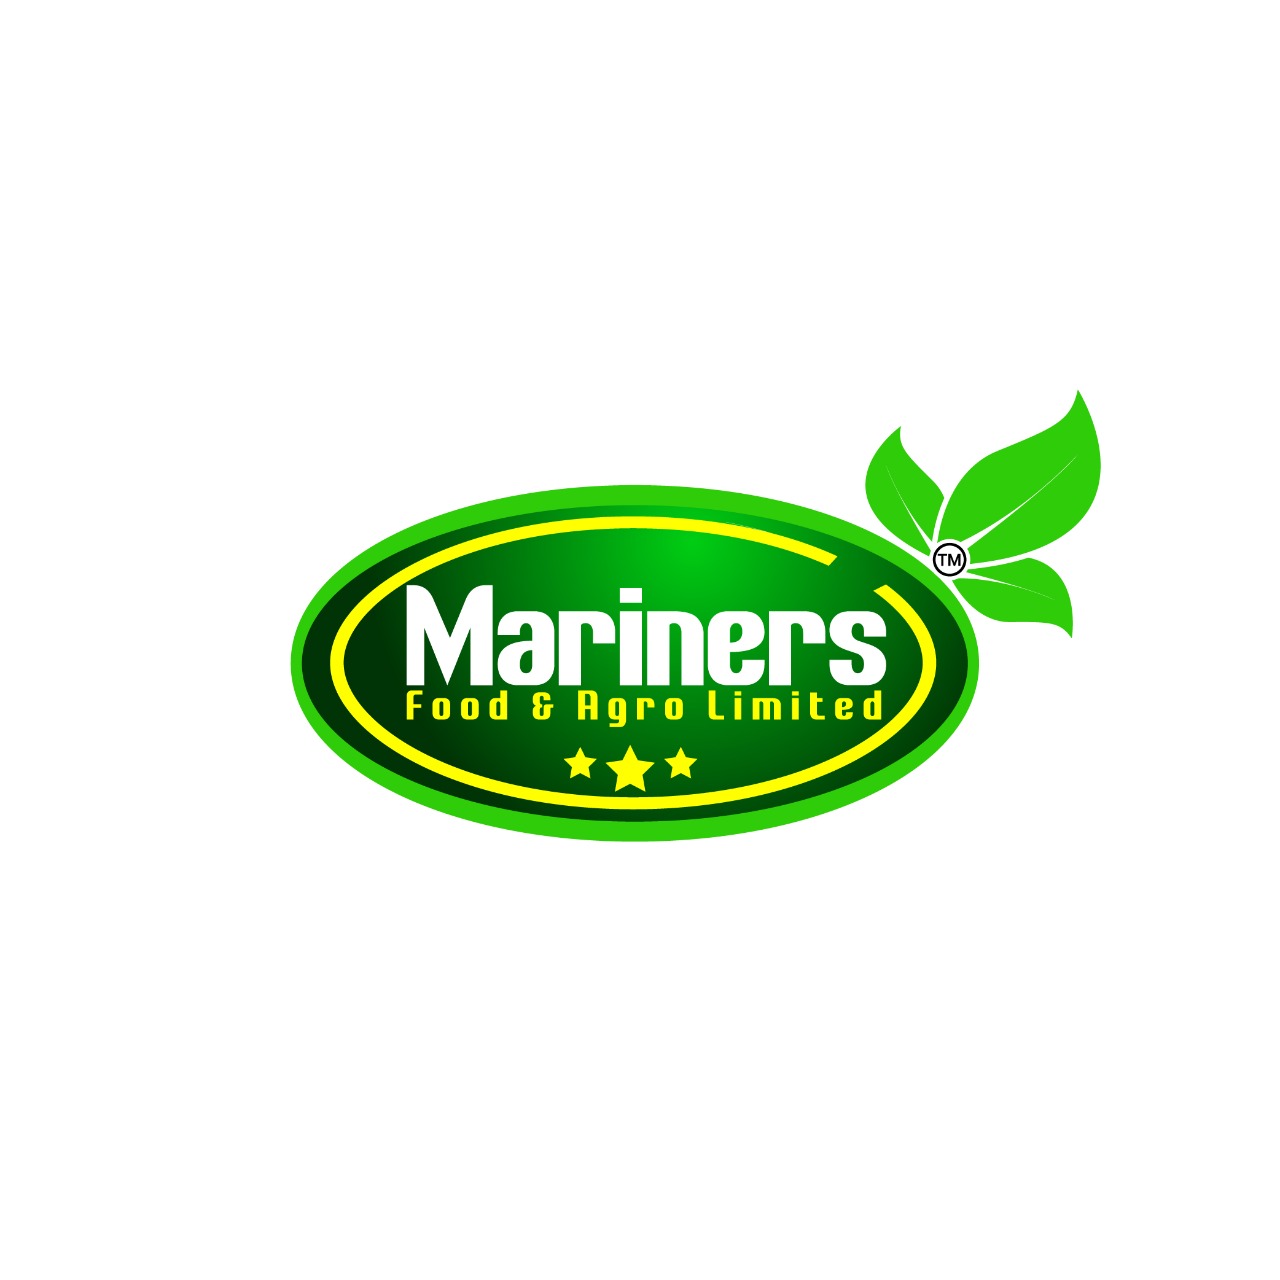 MARINERS FOOD & AGRO LTD